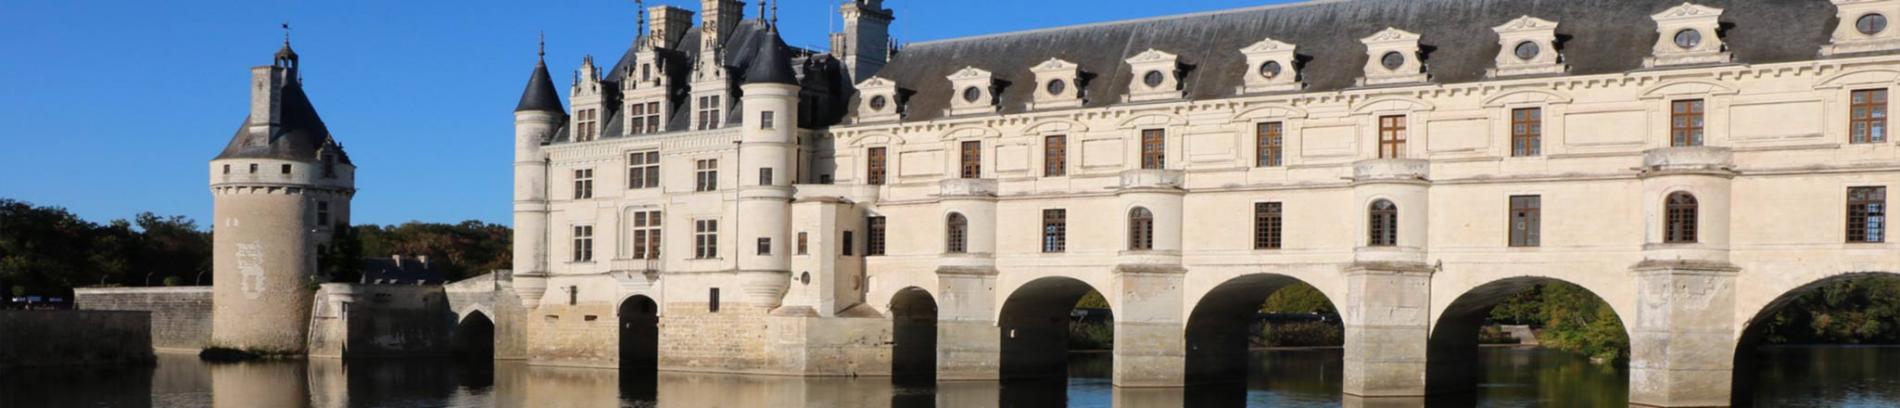 Slide Chateau de la Loire près de Chinon